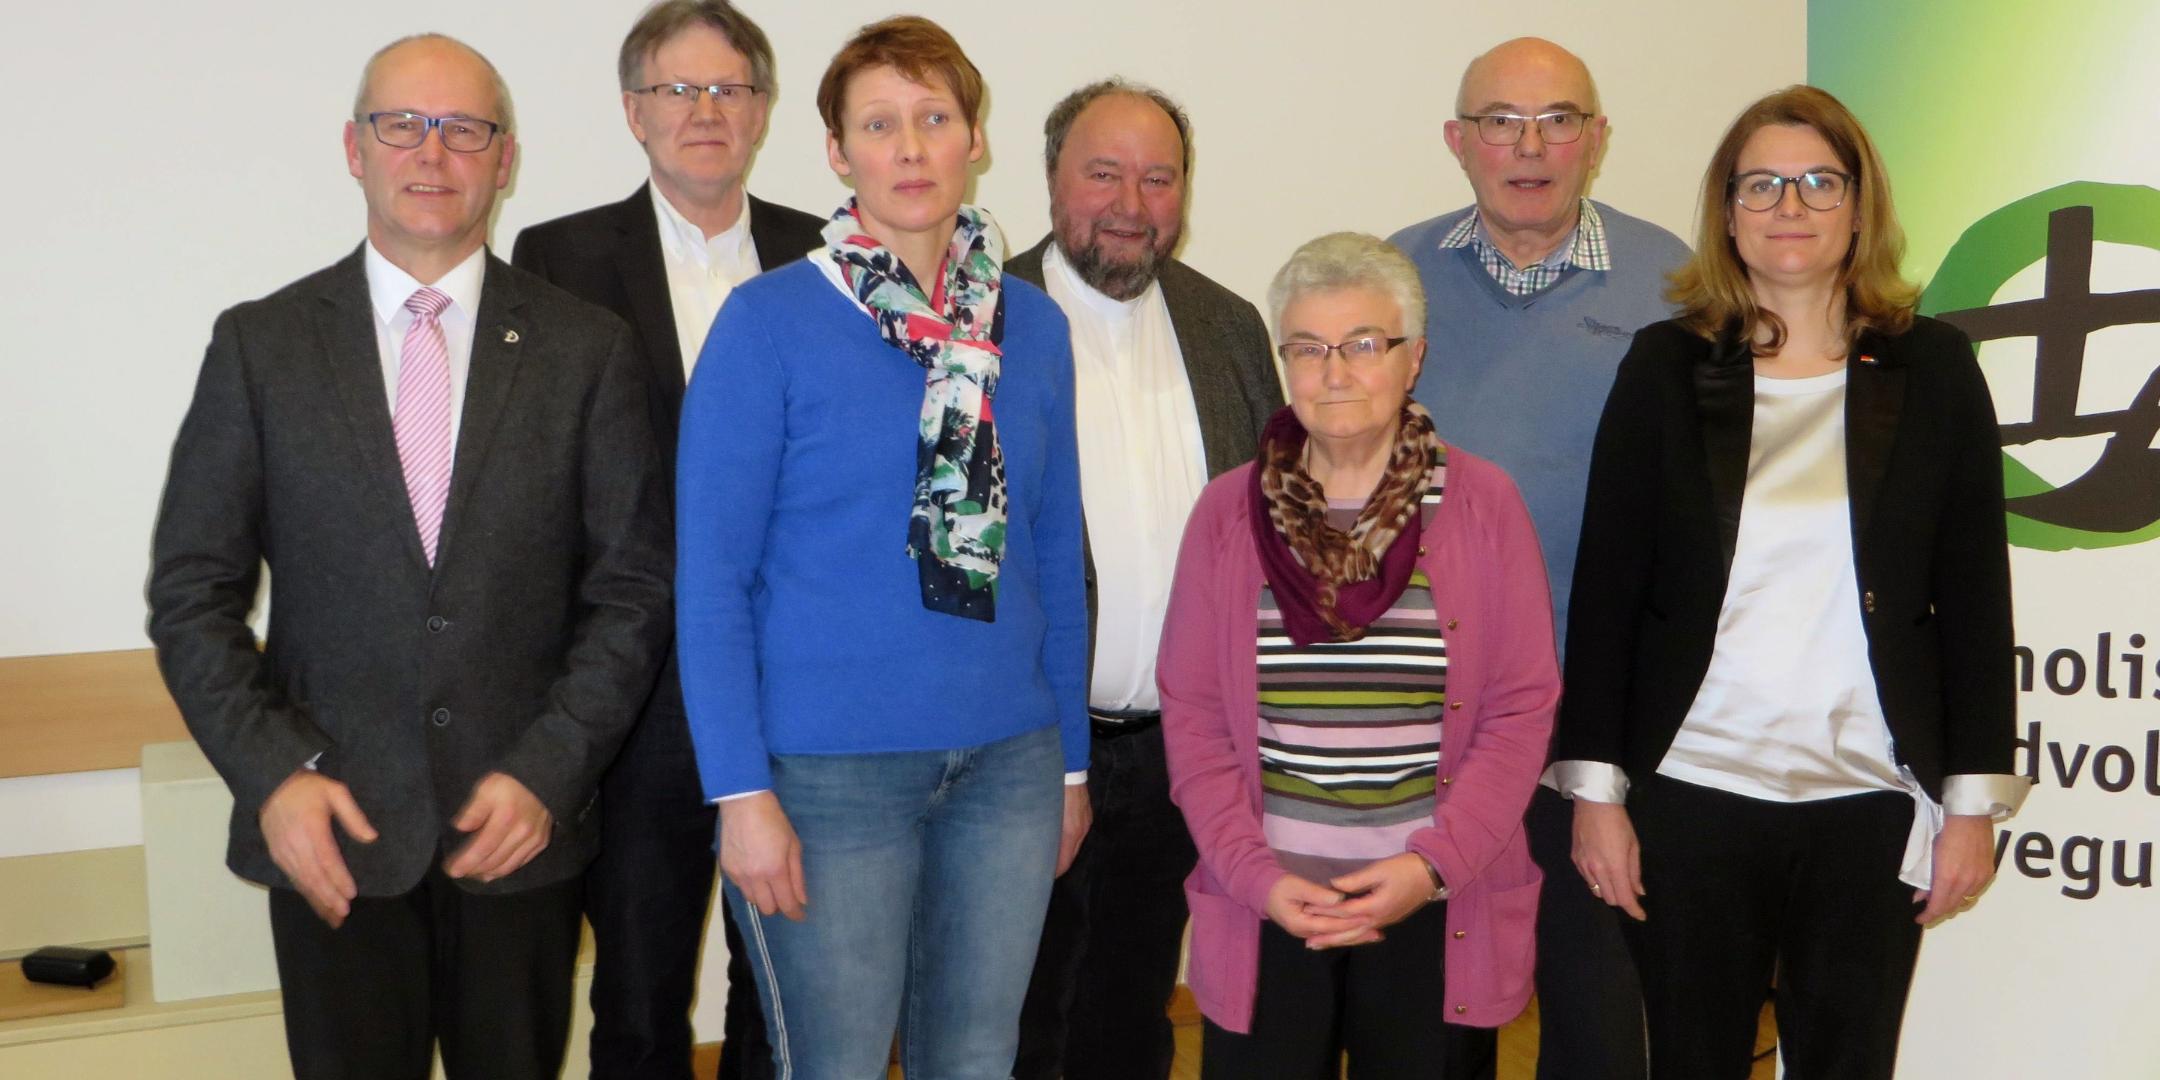 Der Vorstand der Katholischen Landvolkbewegung mit den Gästen Simone Thiel und Richard Zirbes, Beigeordneter der VGV Wittlich-Land.